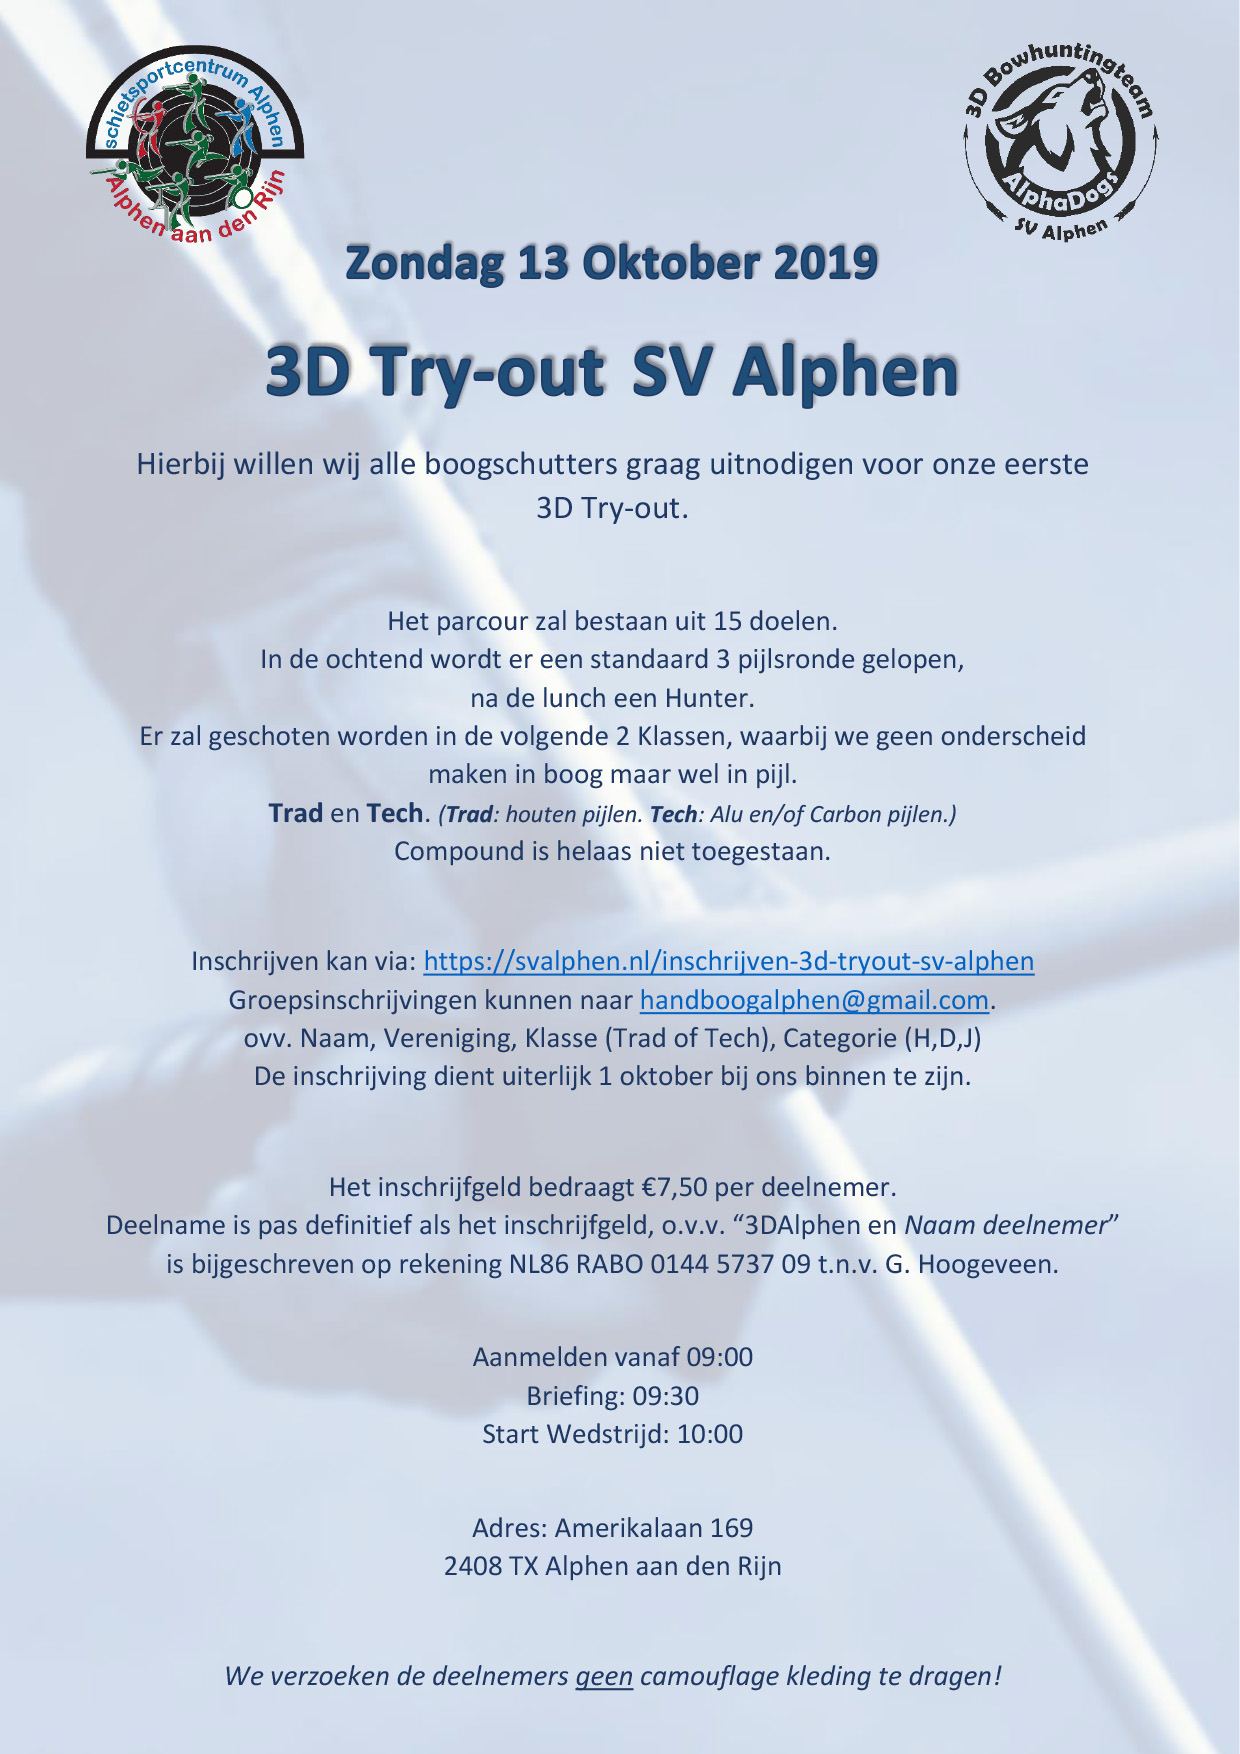 3D Try-out SV Alphen @ Amerikalaan 169 2408 TX Alphen aan den Rijn